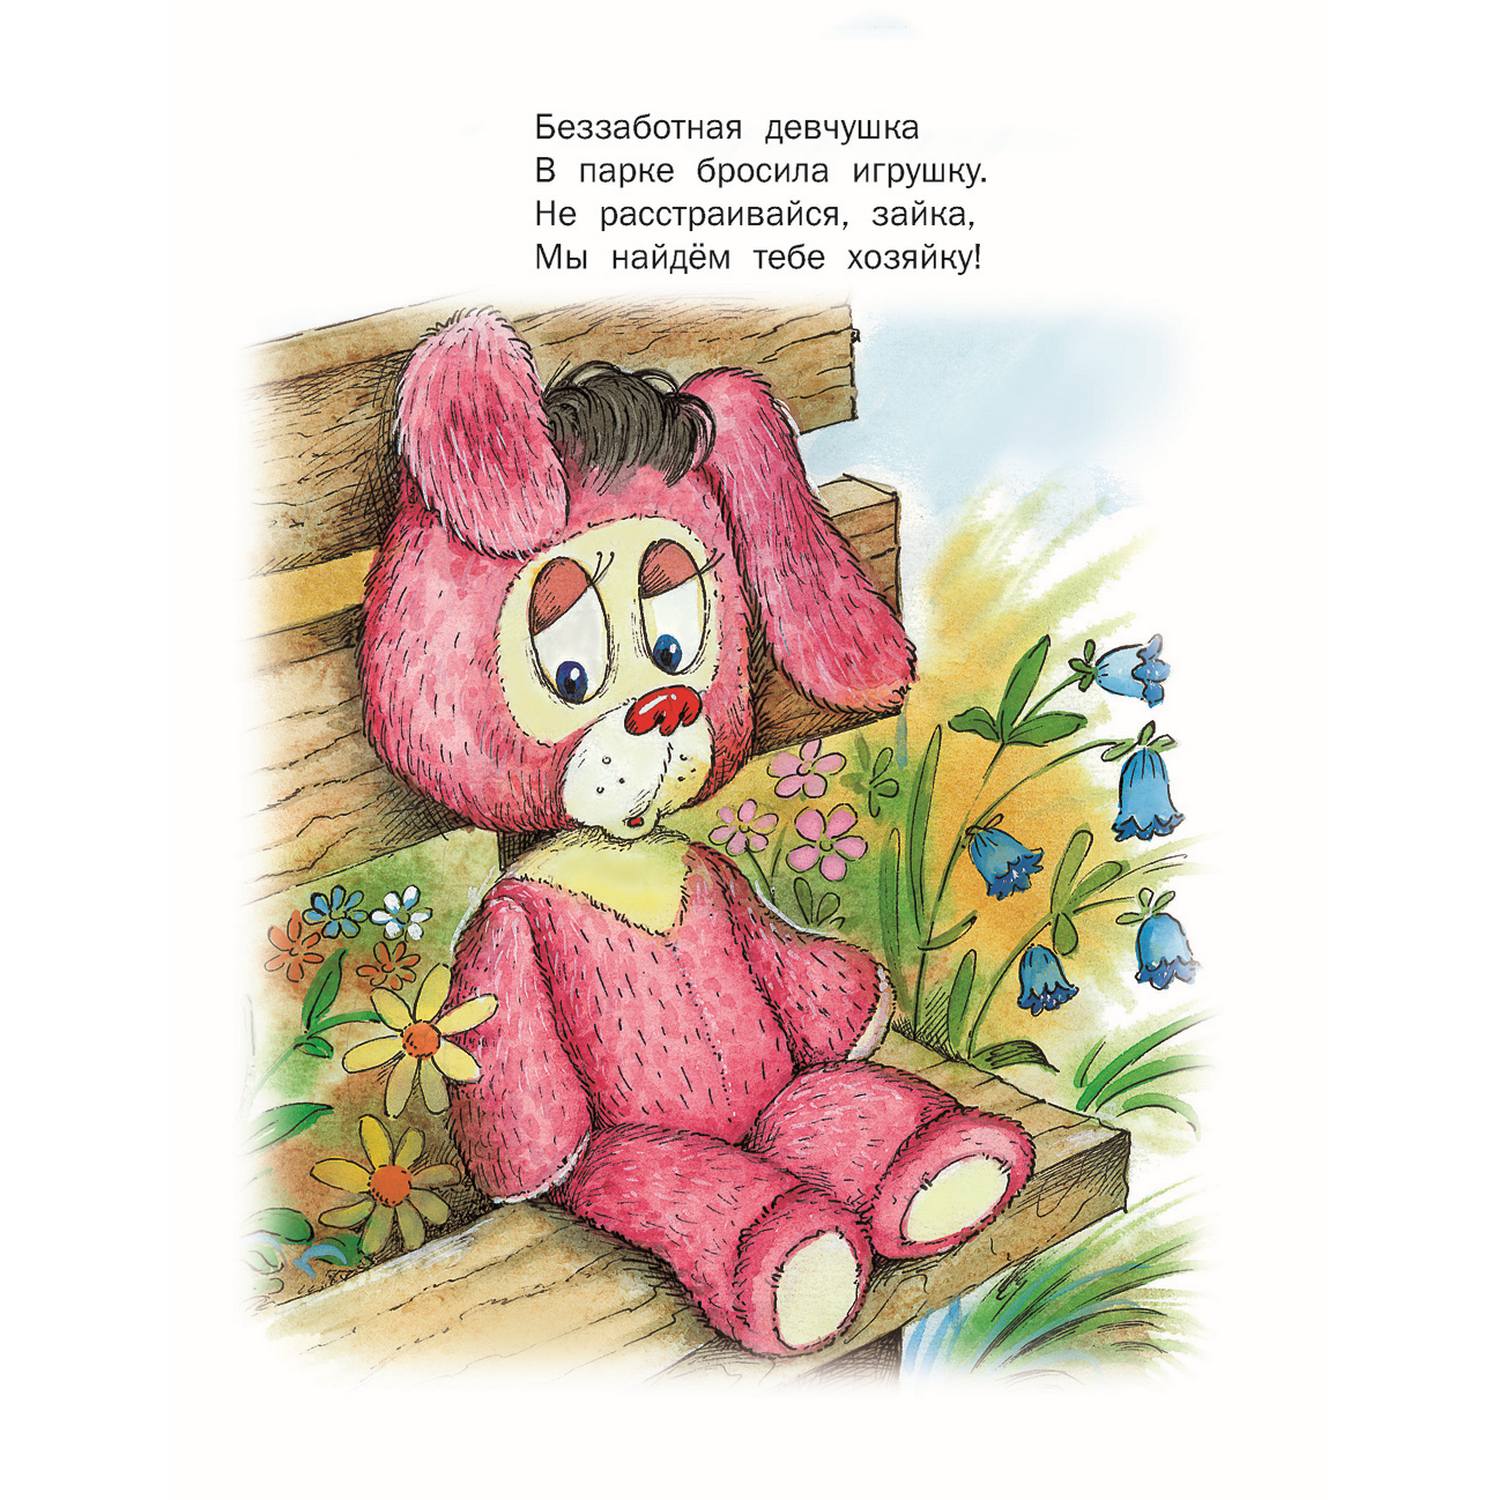 Набор книг Русич стихи и сказки для детей 6 шт - фото 6